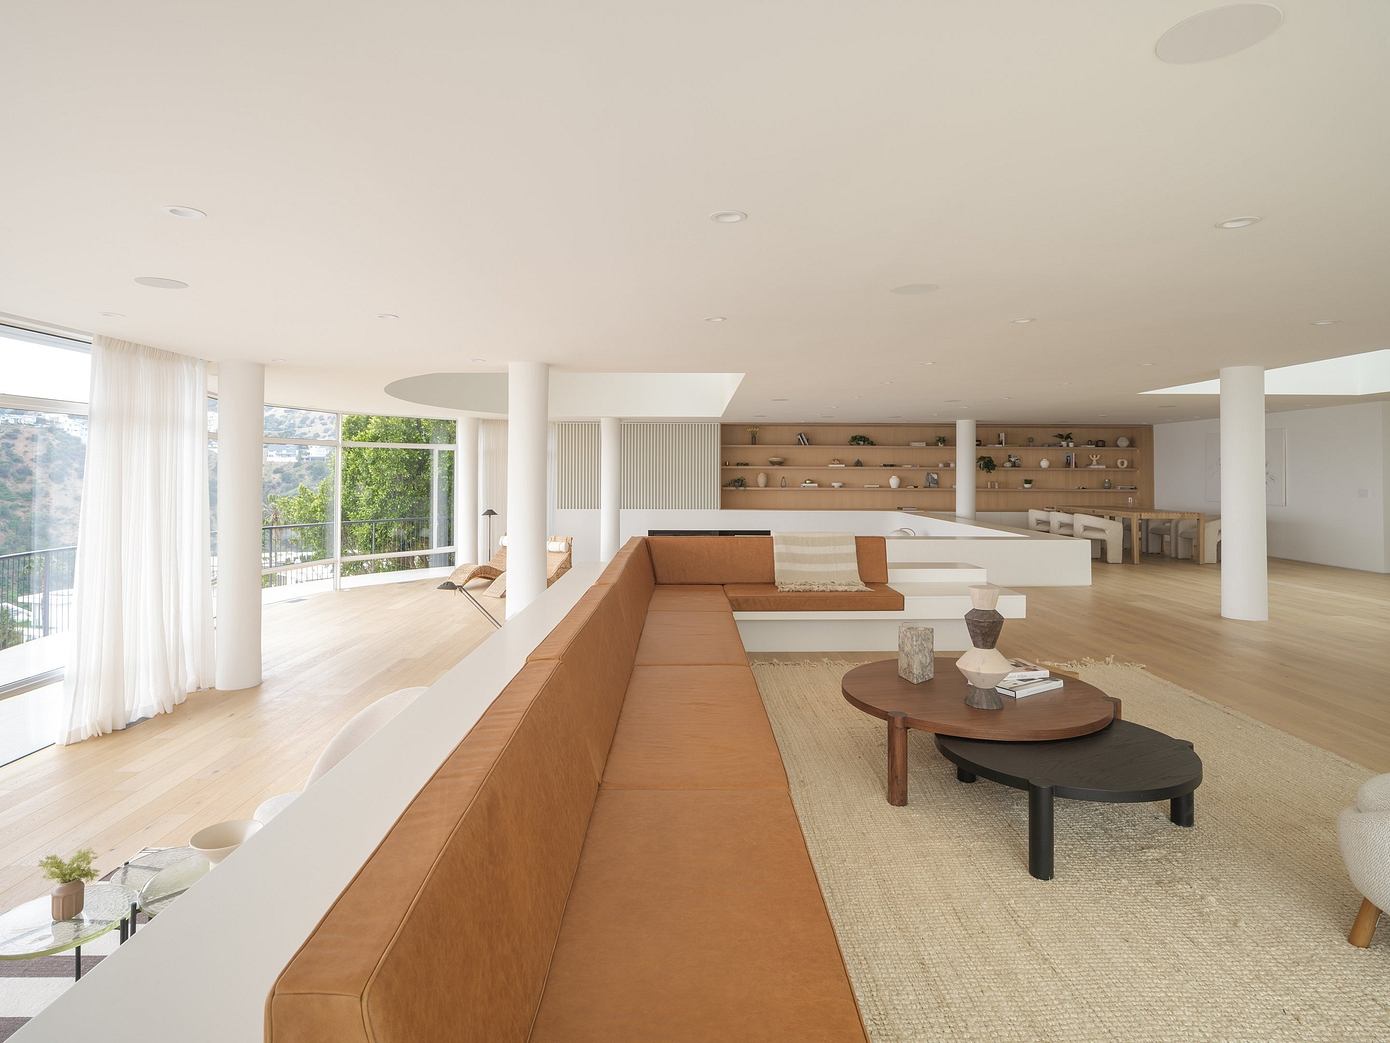 Oceanus: Modernizing a Midcentury Home in Los Angeles